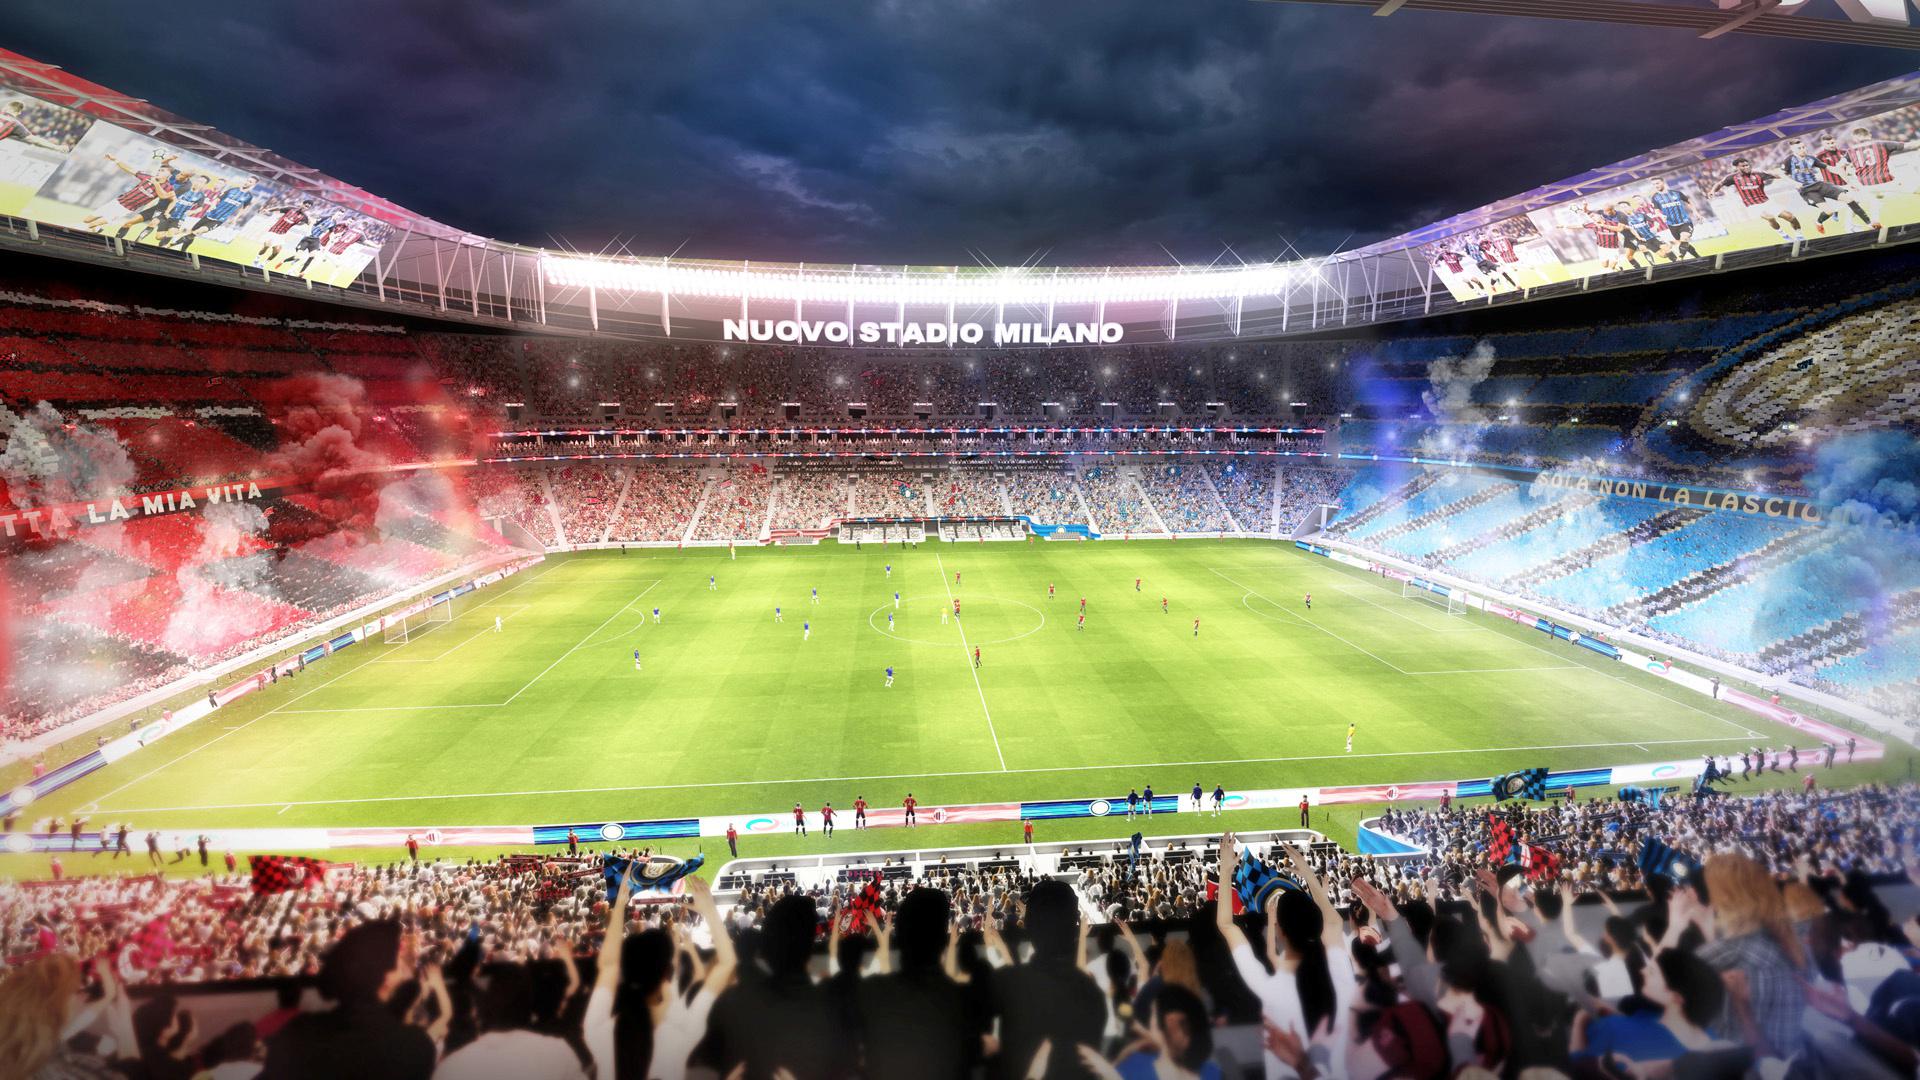 Nogometaši Milana i Intera trebali bi do 2022. godine dobiti novi stadion